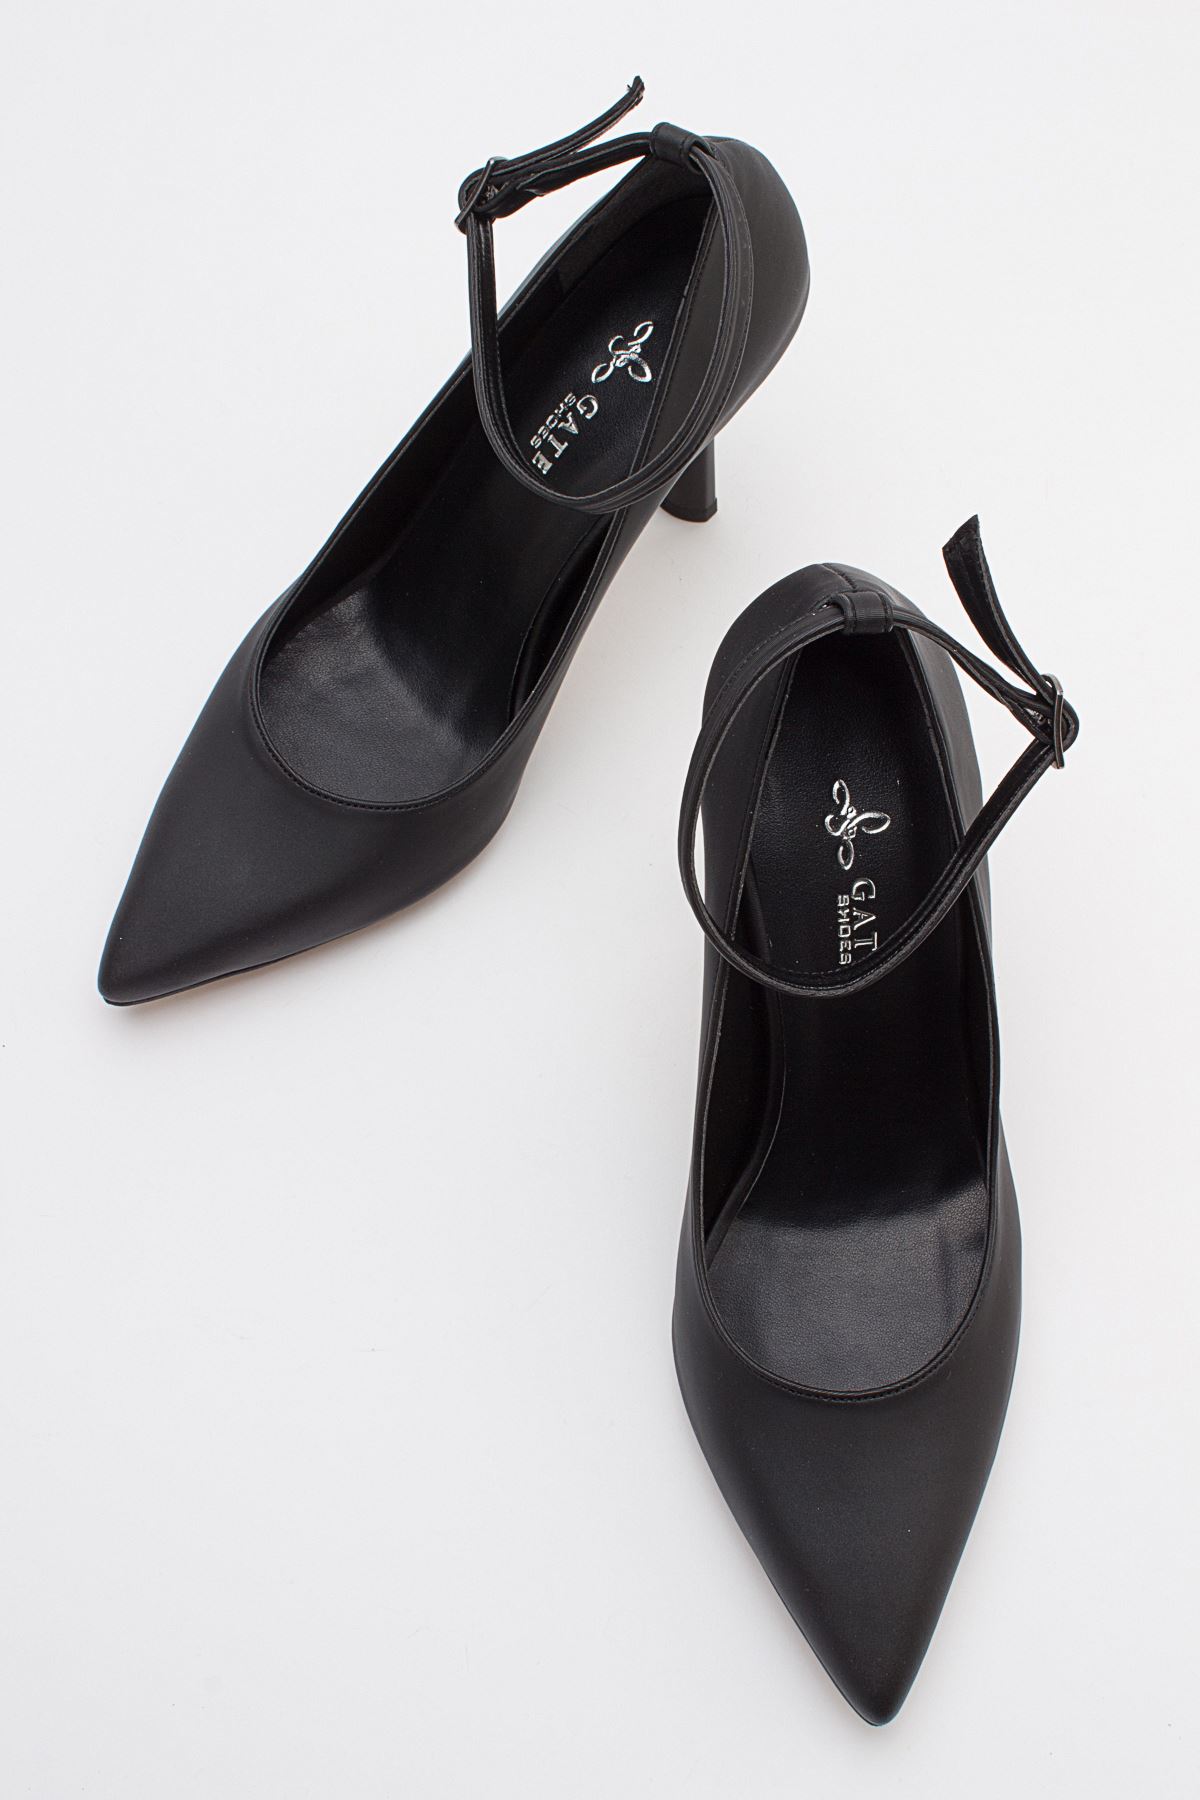 Kadın Bilekten Bağlamalı Topuklu Ayakkabı Ebra Gate29-Siyah